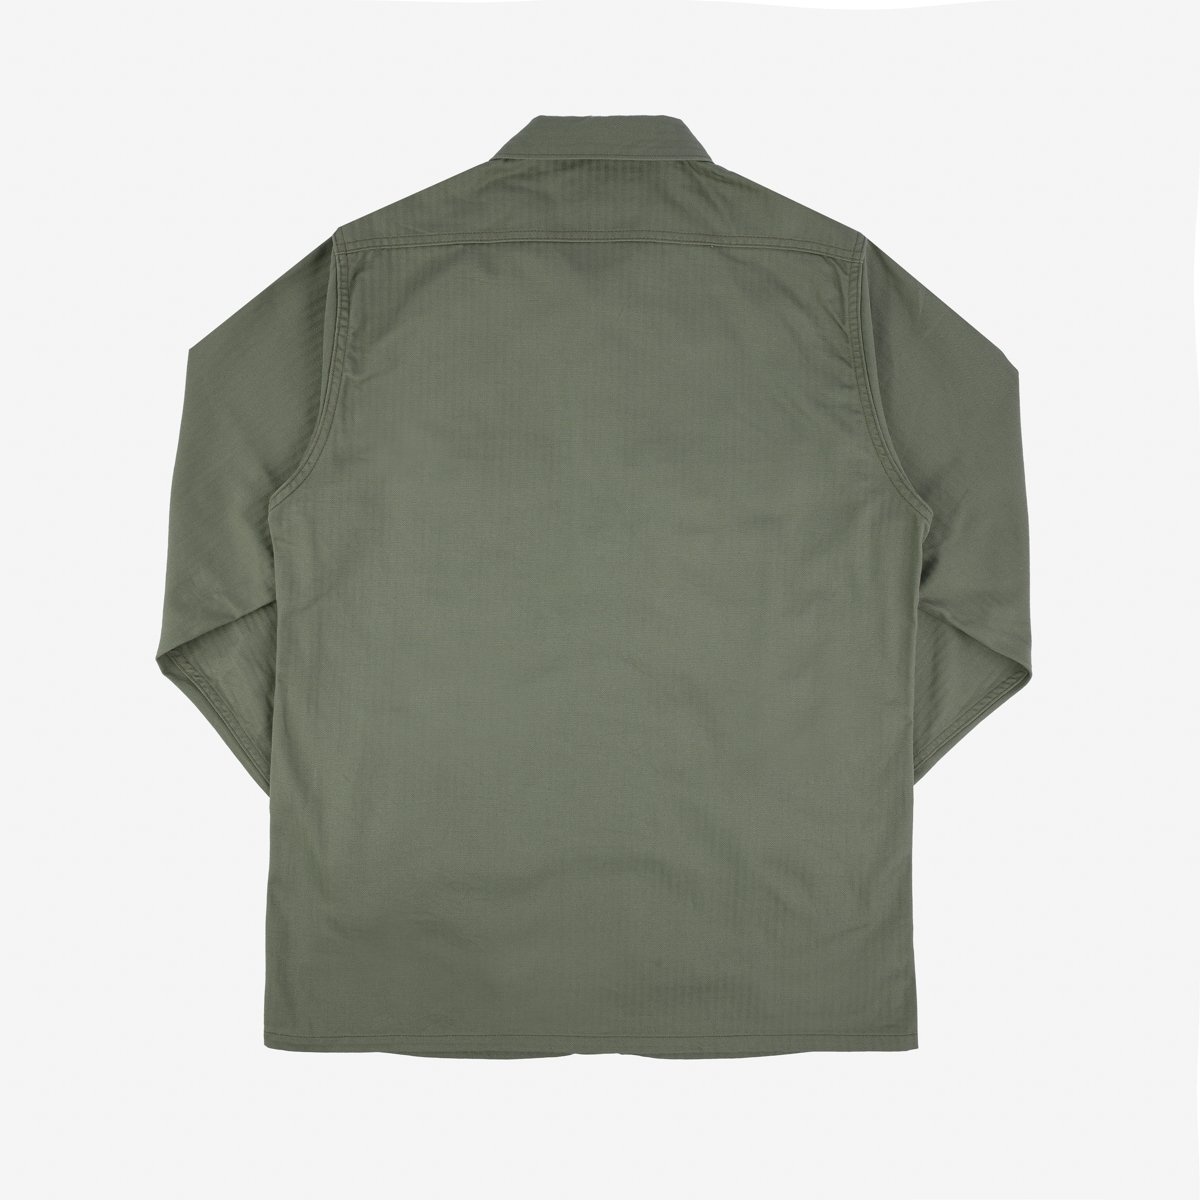 IHSH-385-ODG 9oz Herringbone Military Shirt - Olive Drab Green - 5